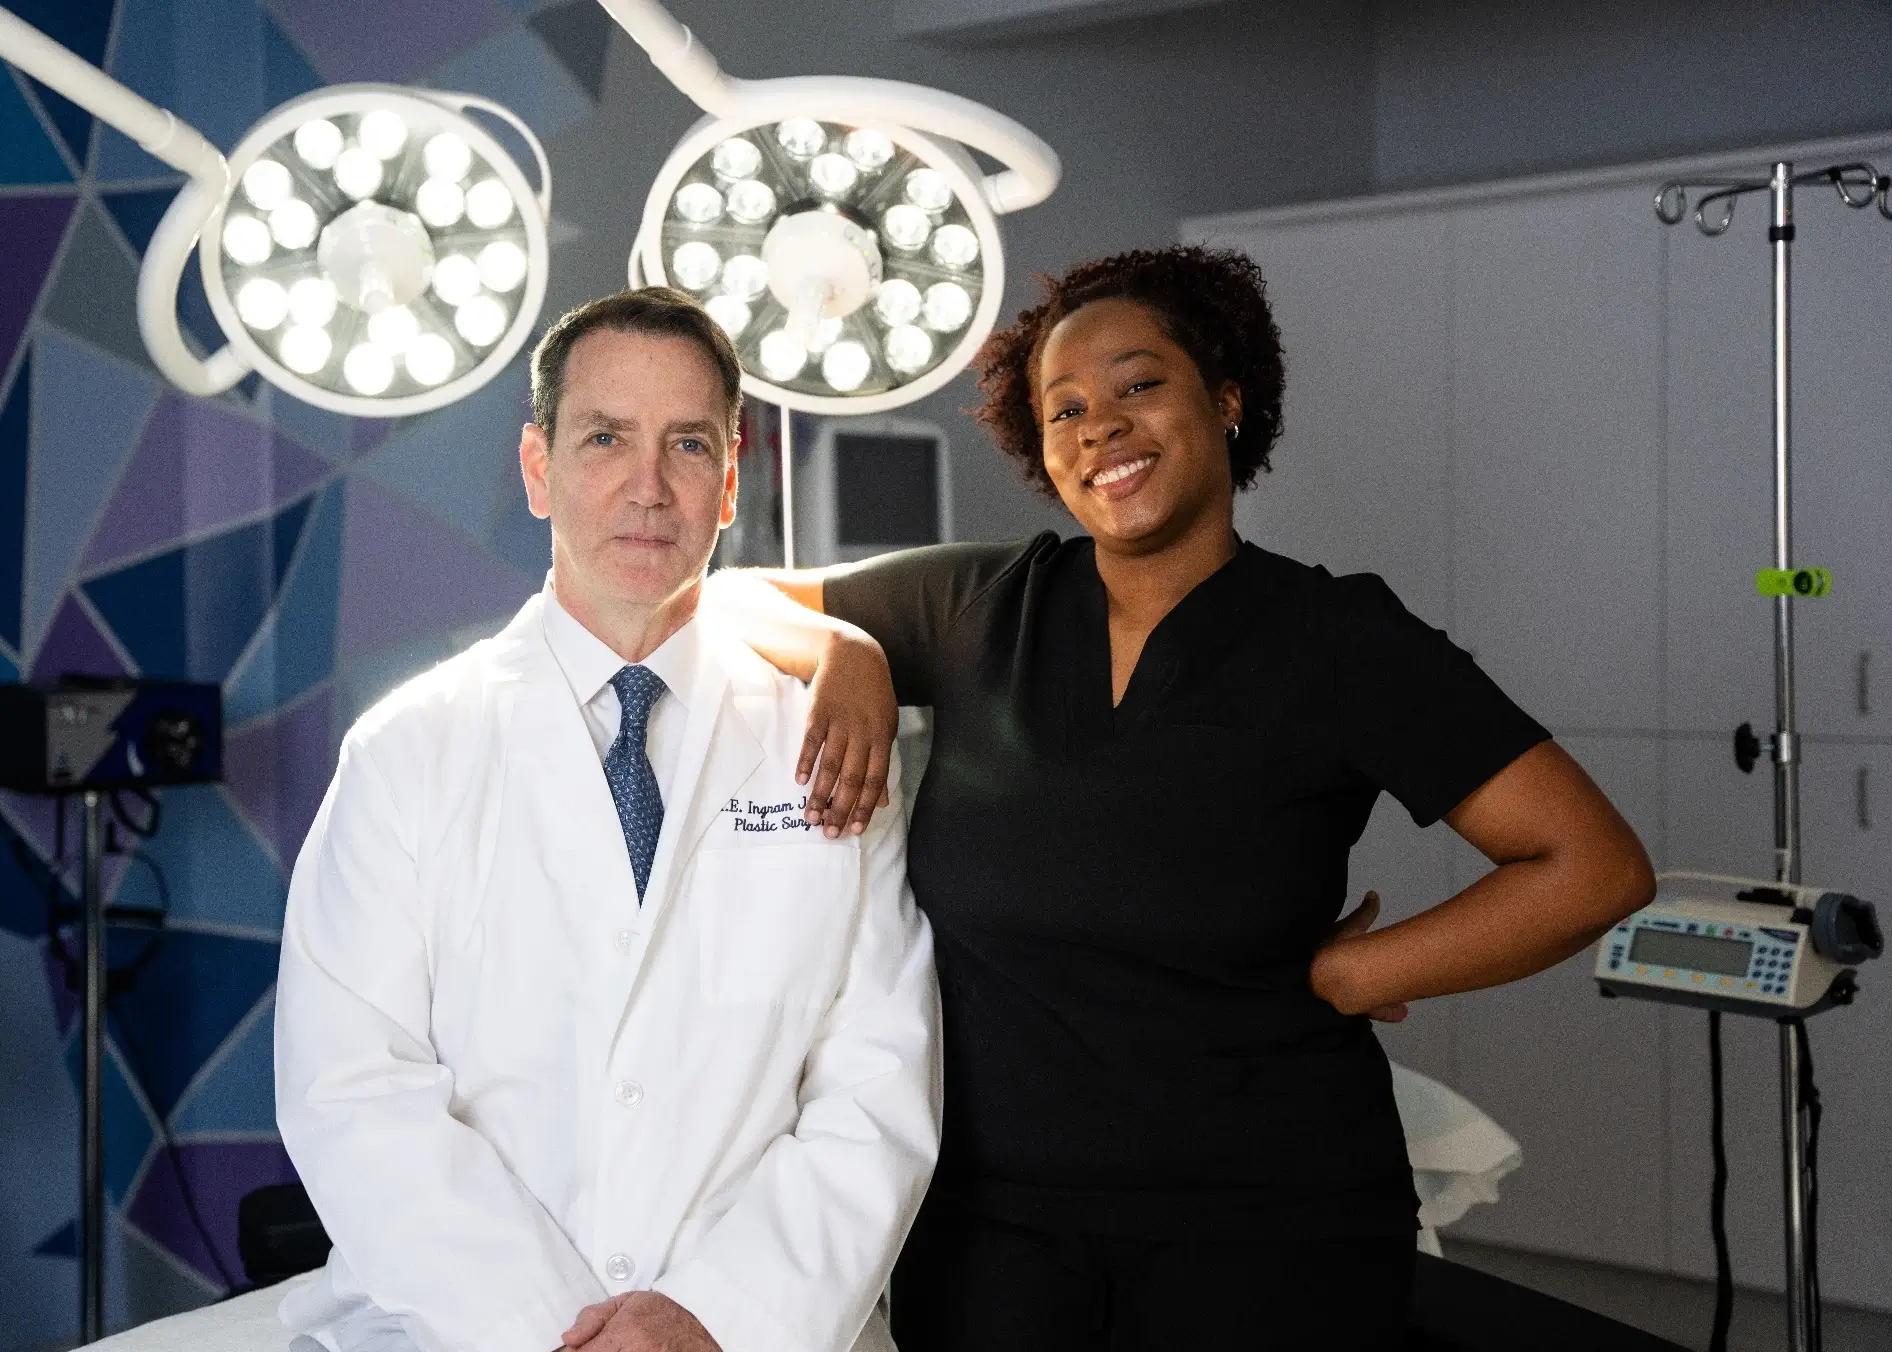 Dr. ingram and staff | Ingram Cosmetic Surgery Nashville